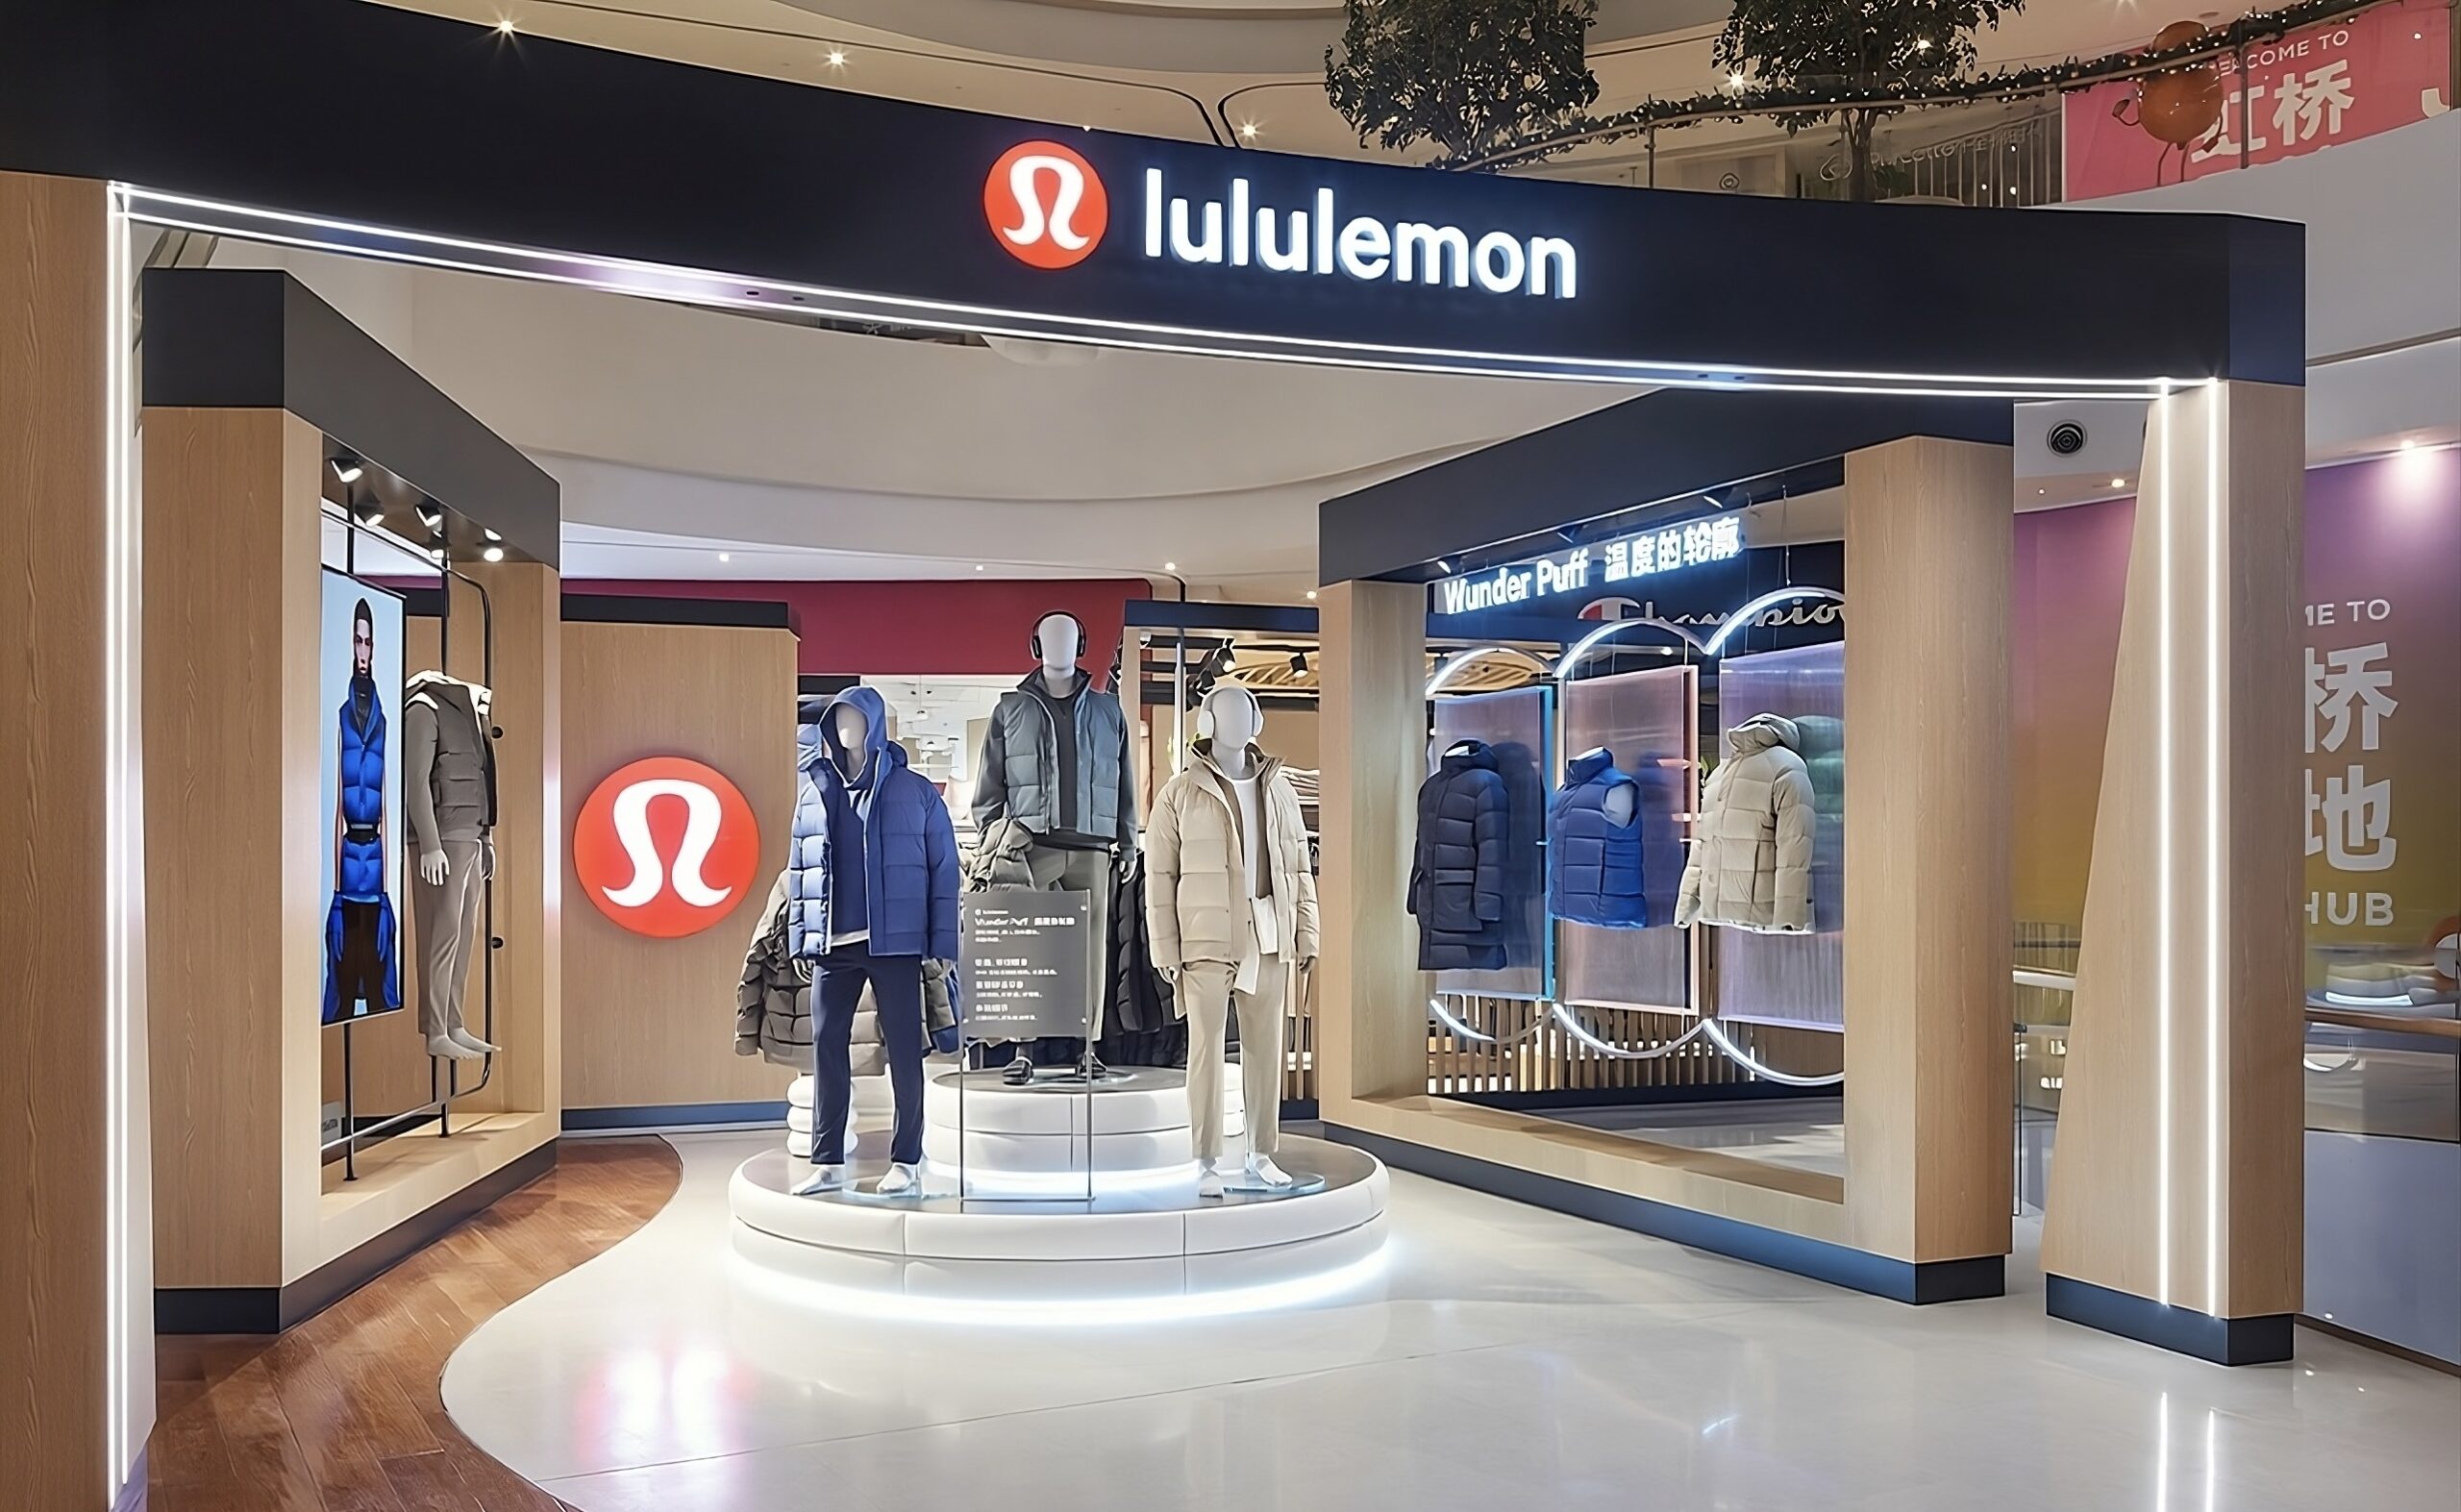 Inside the Lululemon menswear pop-up shop